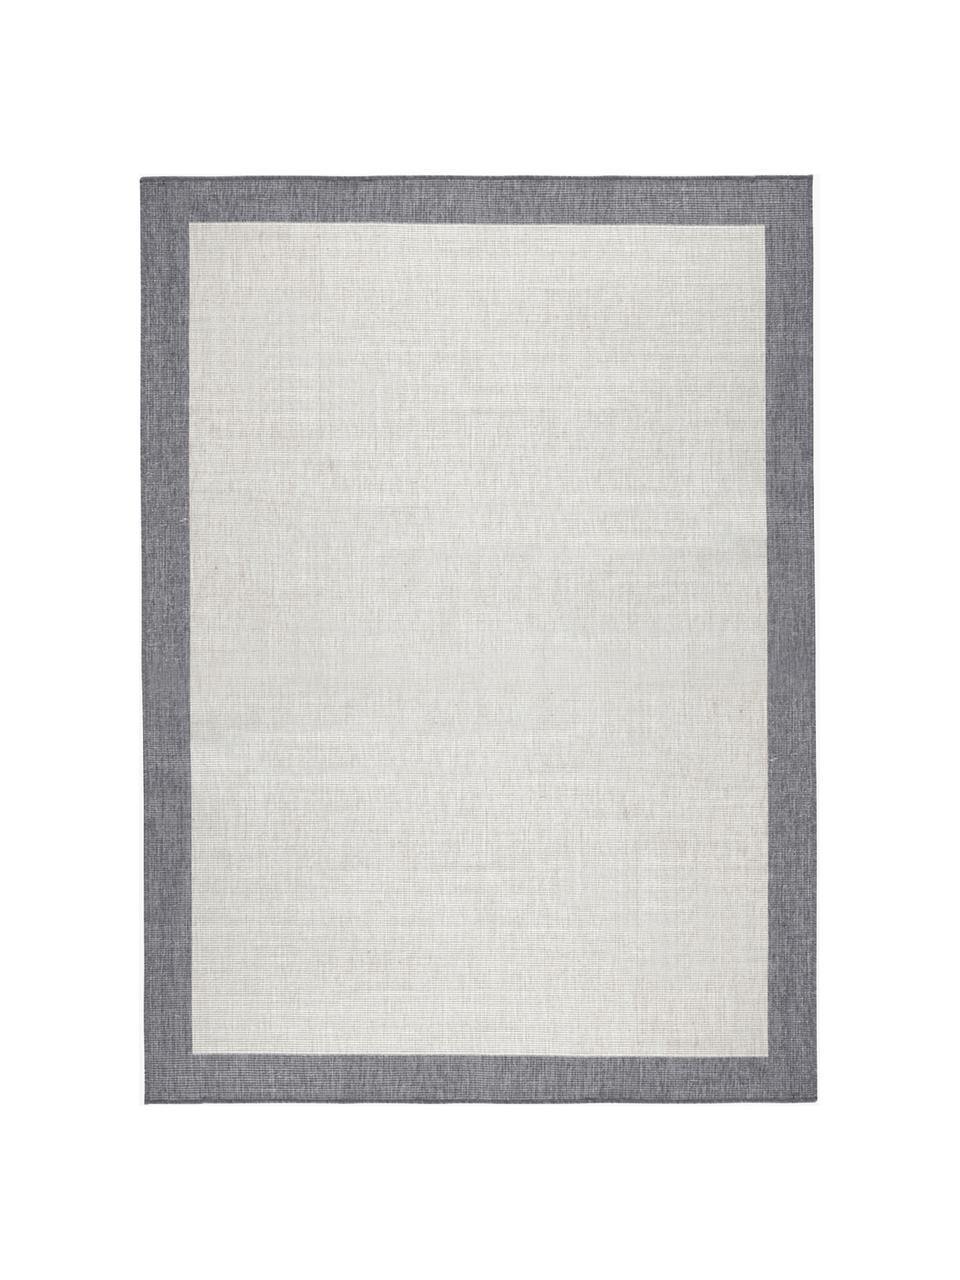 Tappeto reversibile da interno-esterno Panama, Bianco latte, grigio, P 230 x L 160 cm